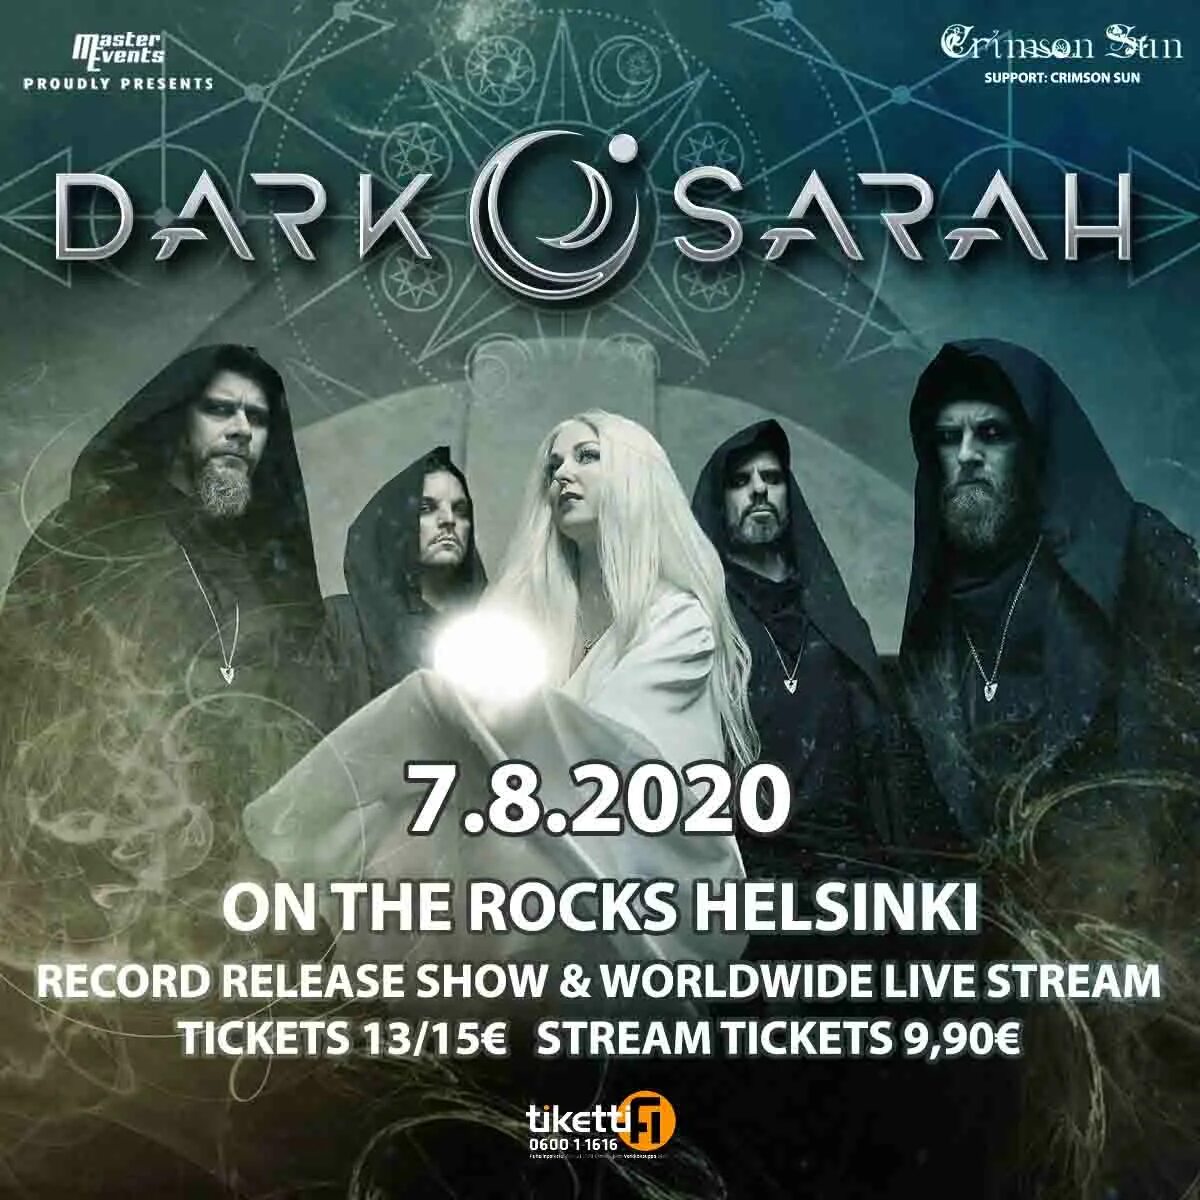 Dark sarah. Dark Sarah группа. Dark Sarah финская группа. Dark Sarah фото. Dark Sarah Grim.